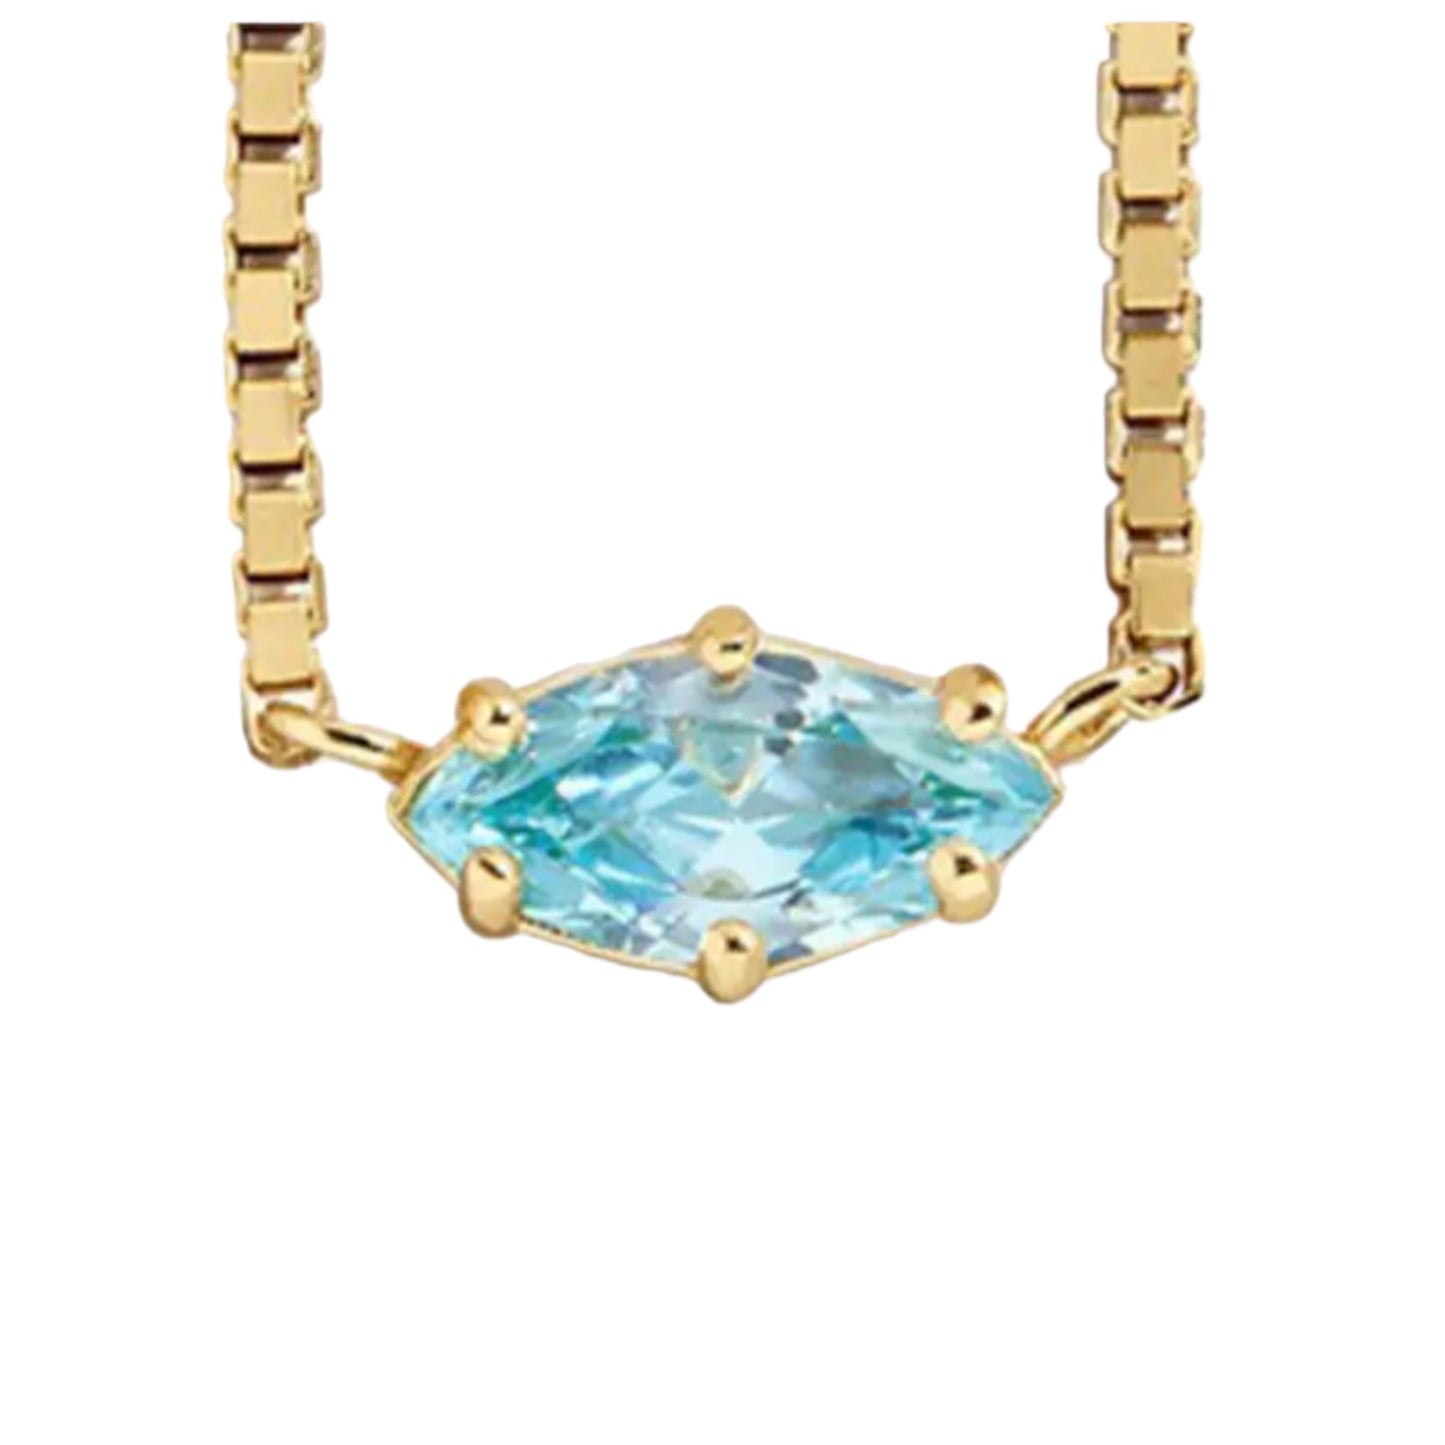 Aqua pietrina necklace